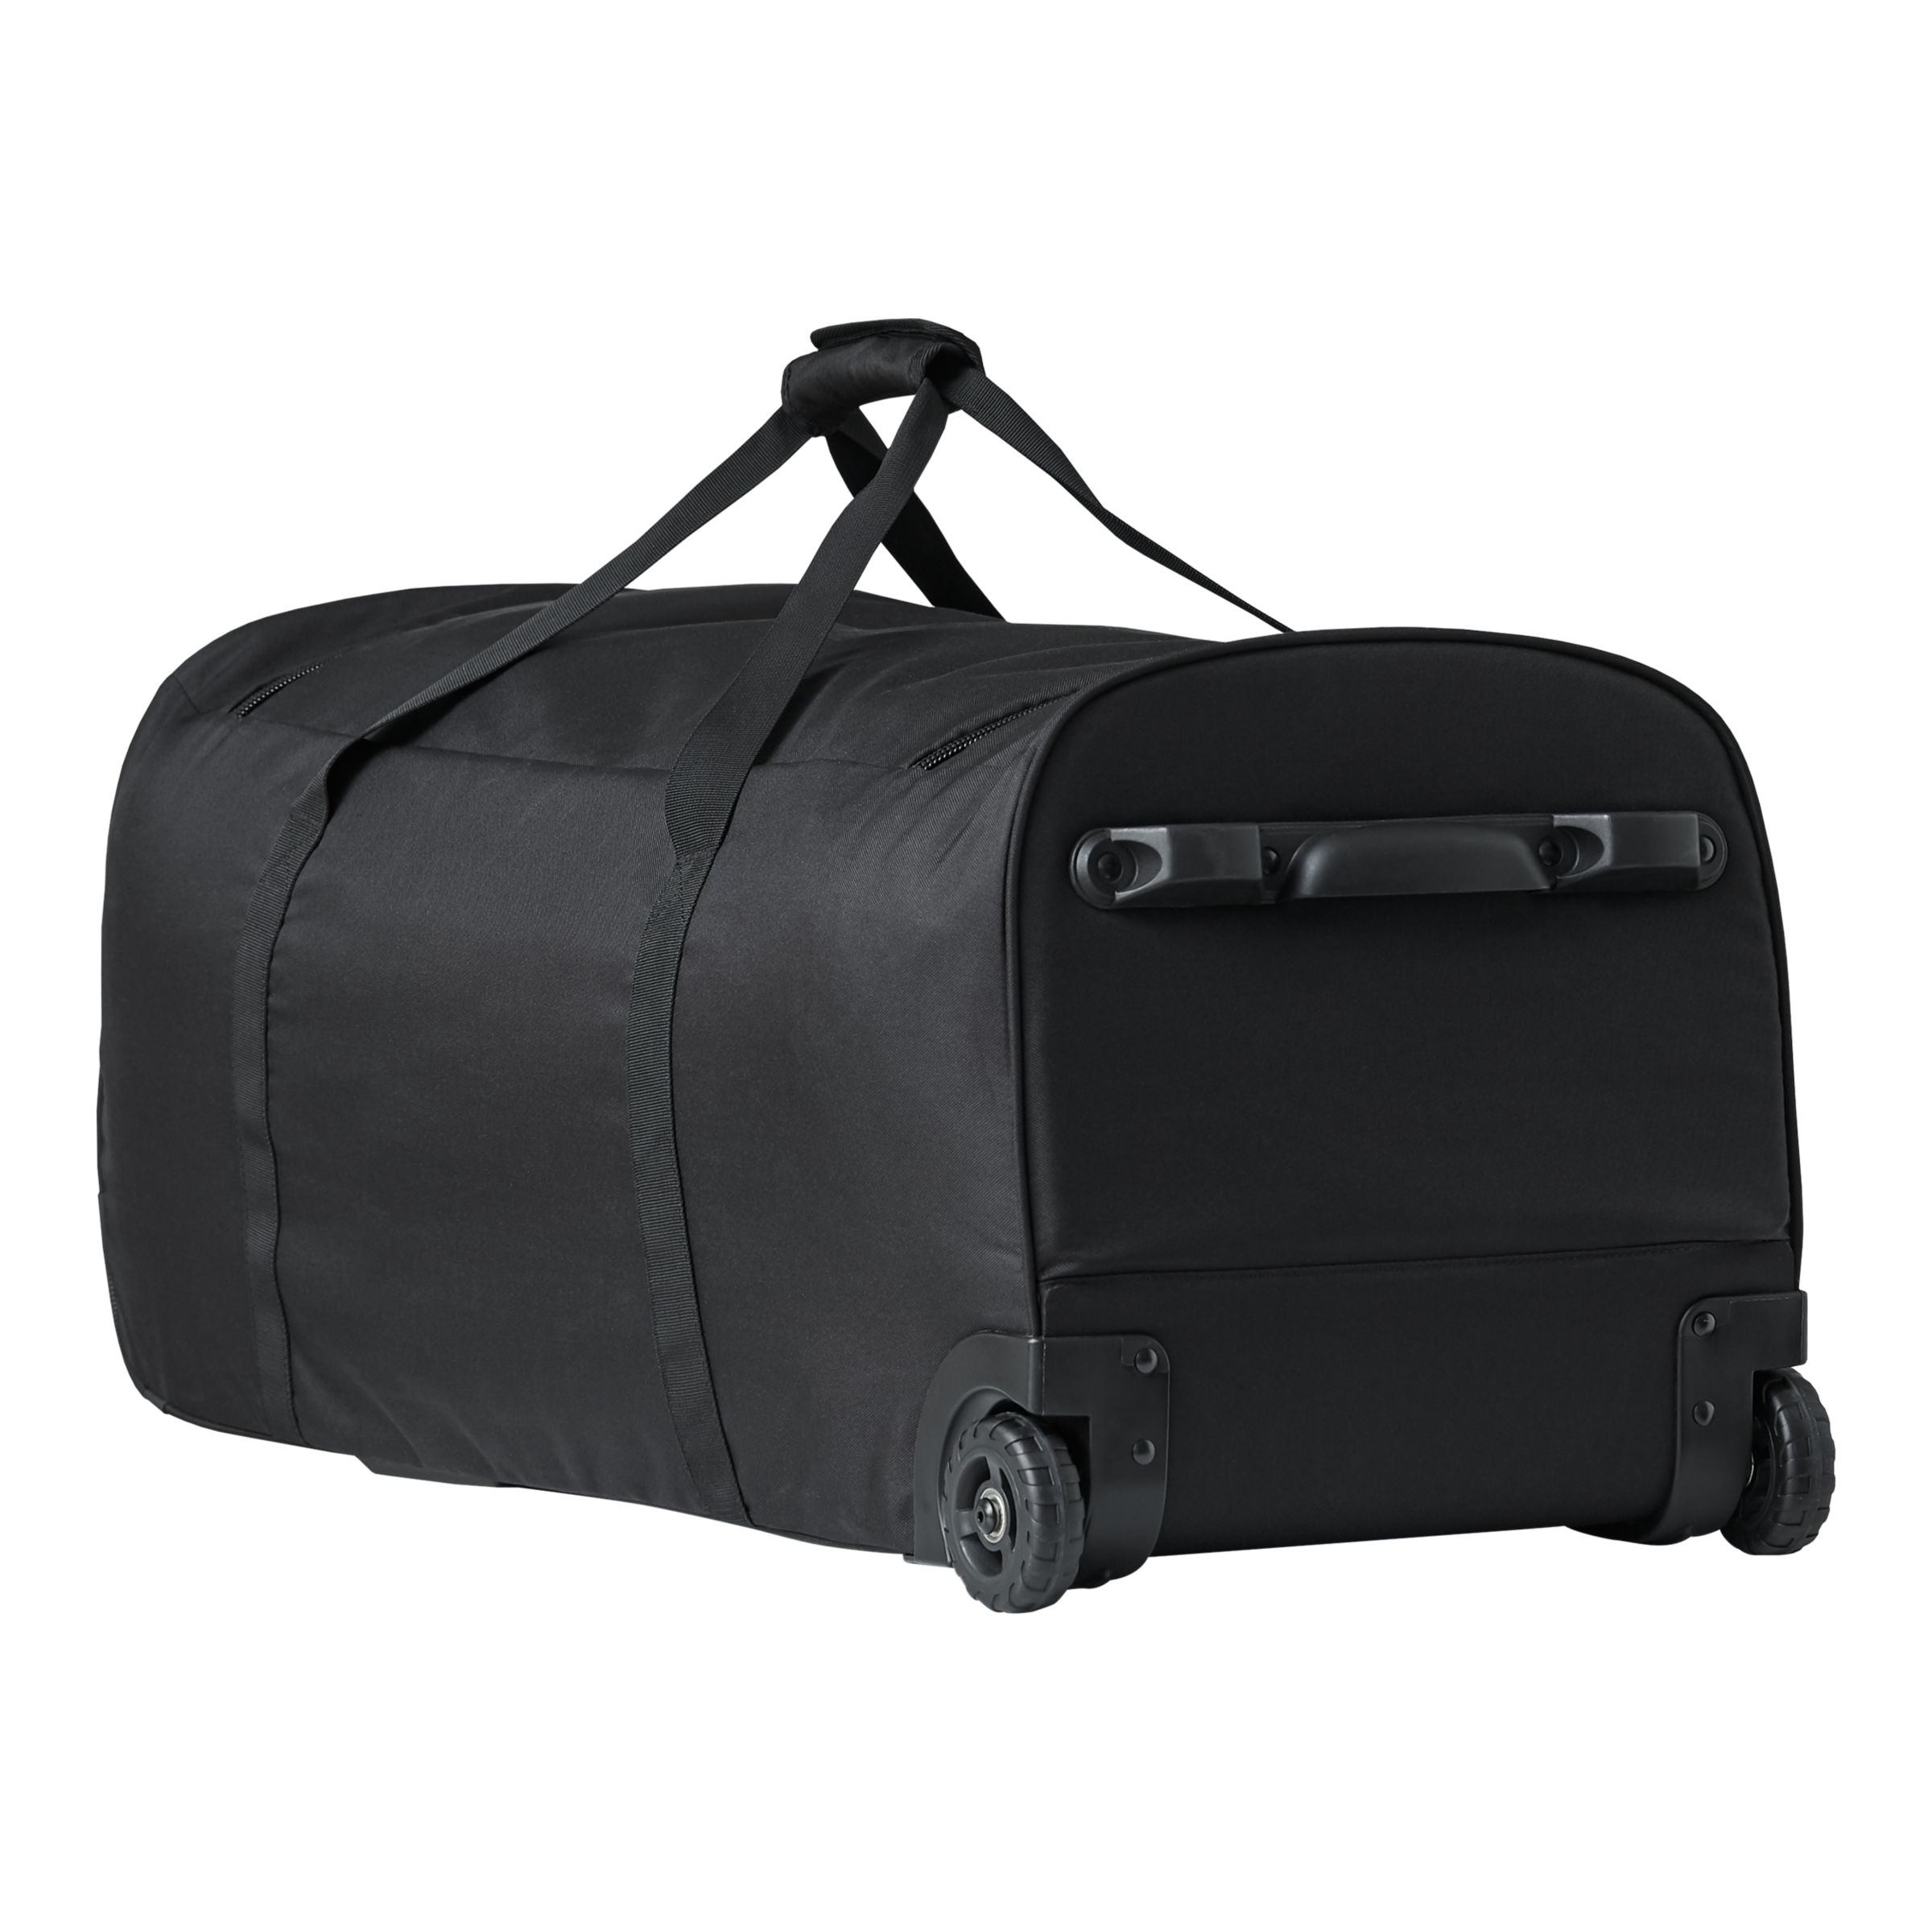 Team XL Wheel Travel Bag - - Bags, - NB Team Sports - US